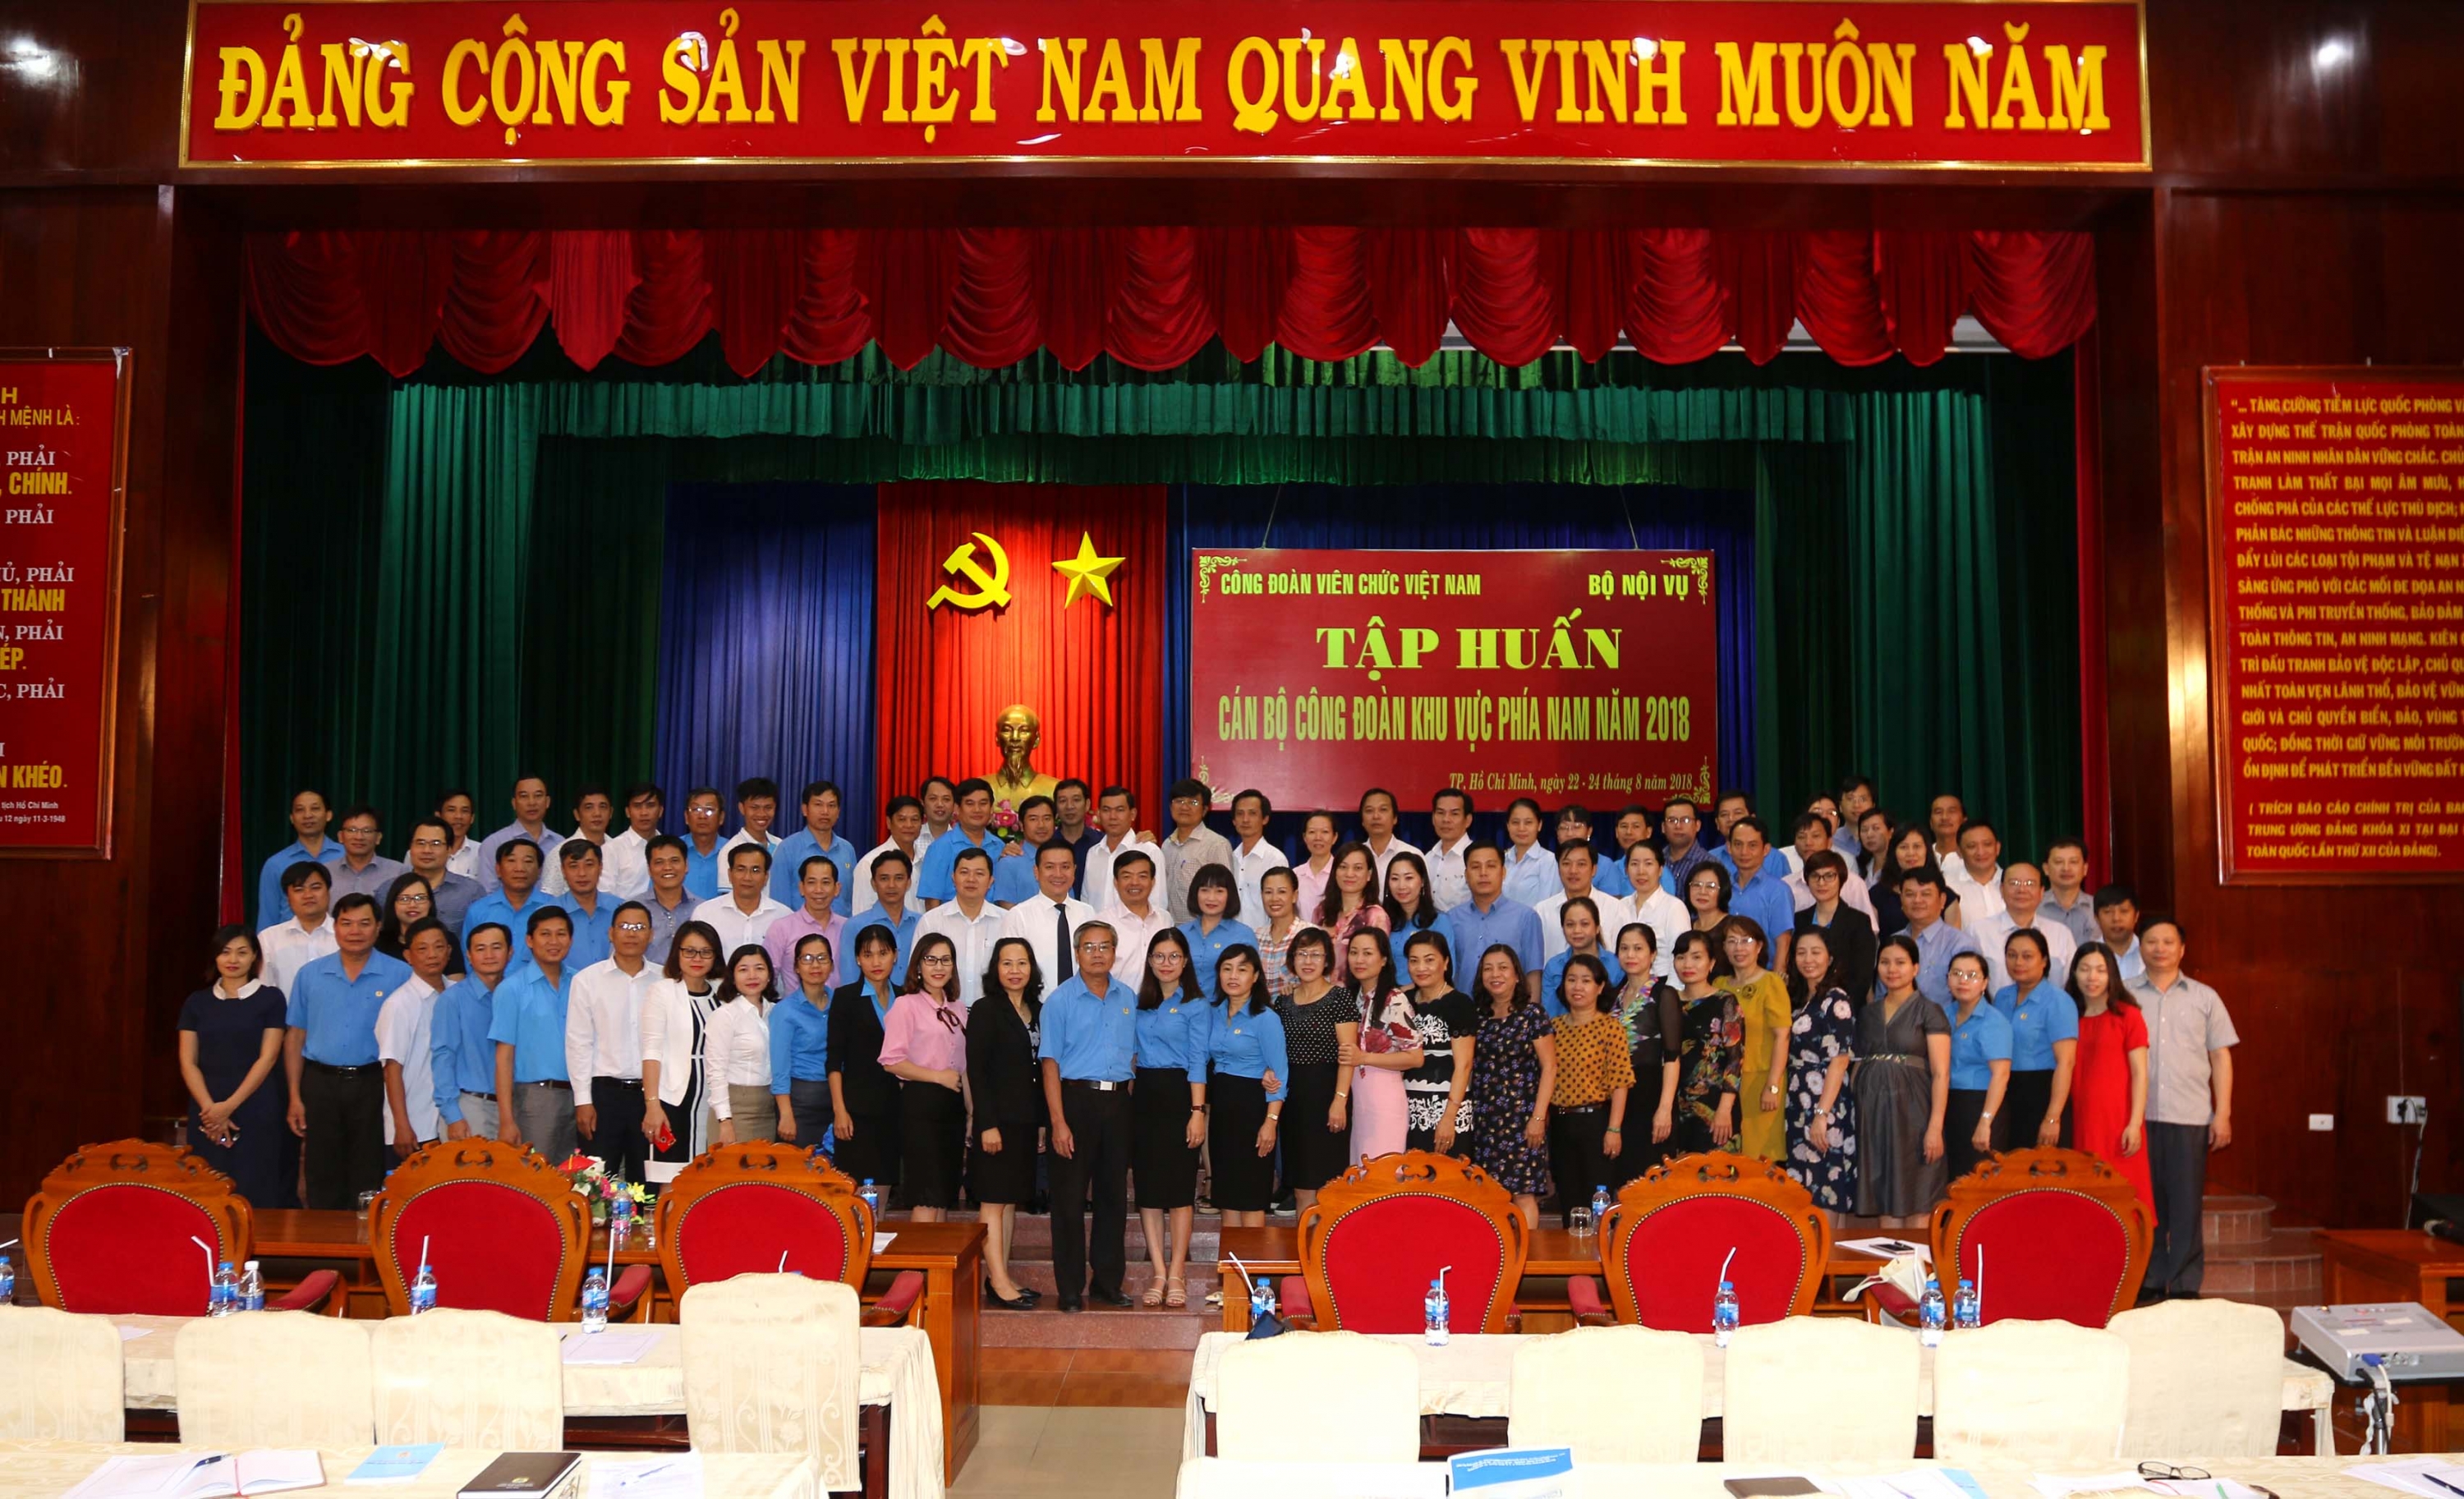 Gần 150 cán bộ công đoàn khu vực phía Nam dự Hội nghị tập huấn do Công đoàn Viên chức Việt Nam phối hợp với Bộ Nội vụ tổ chức